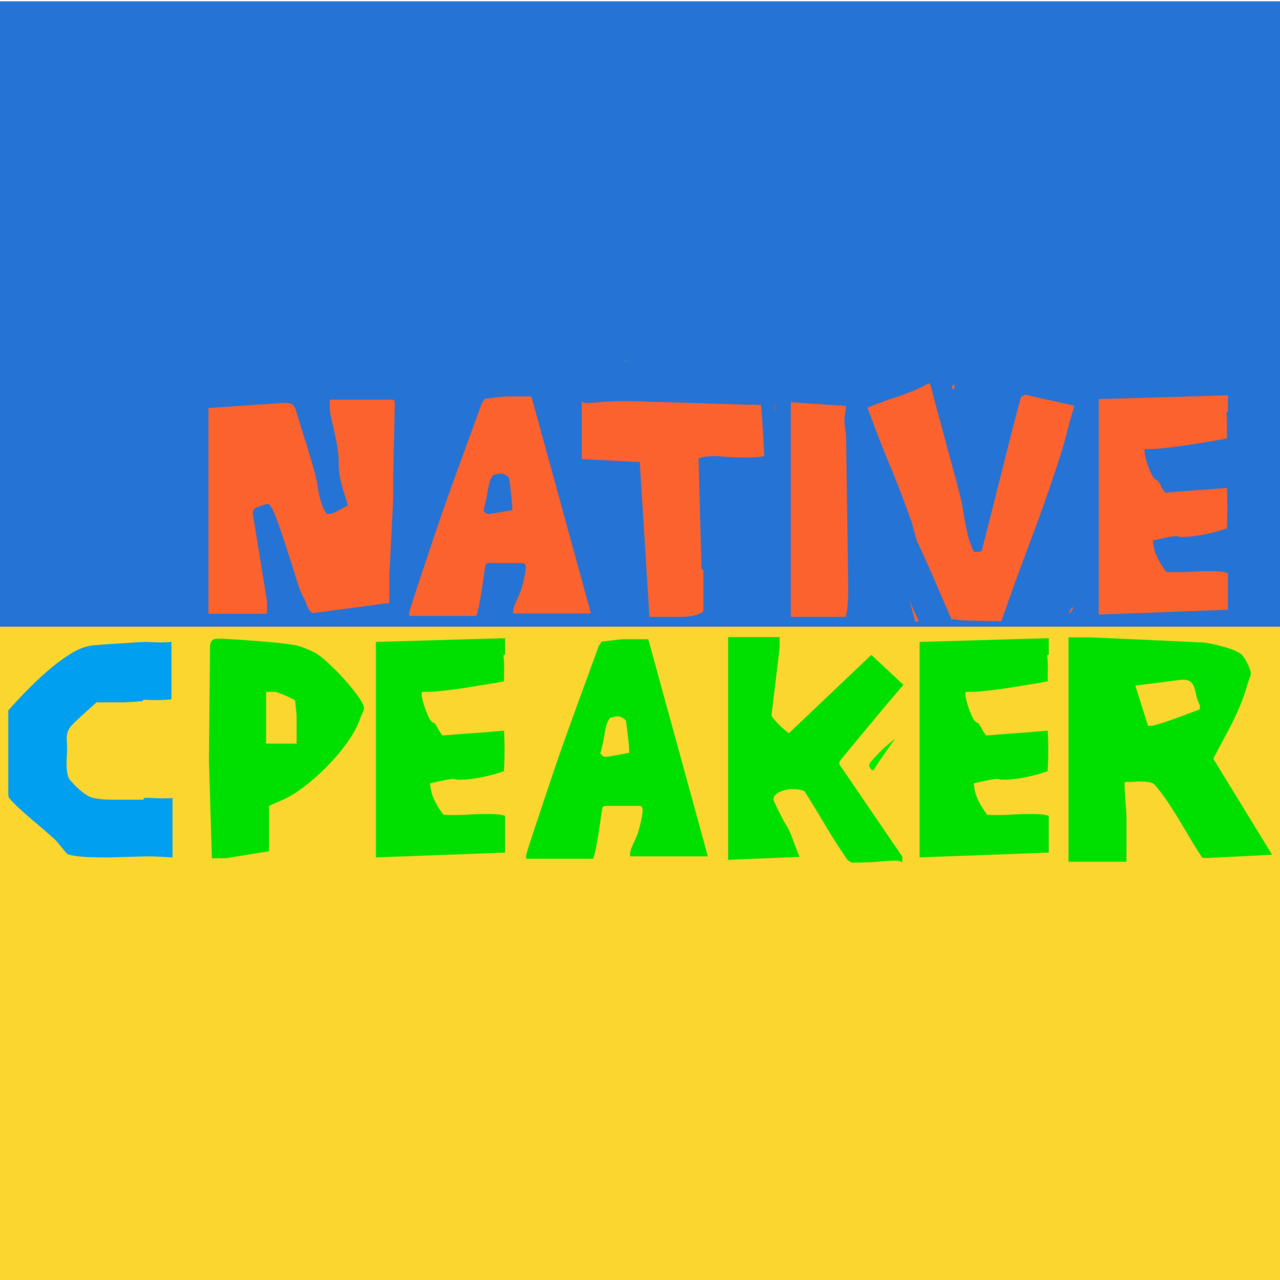 Native Cpeaker